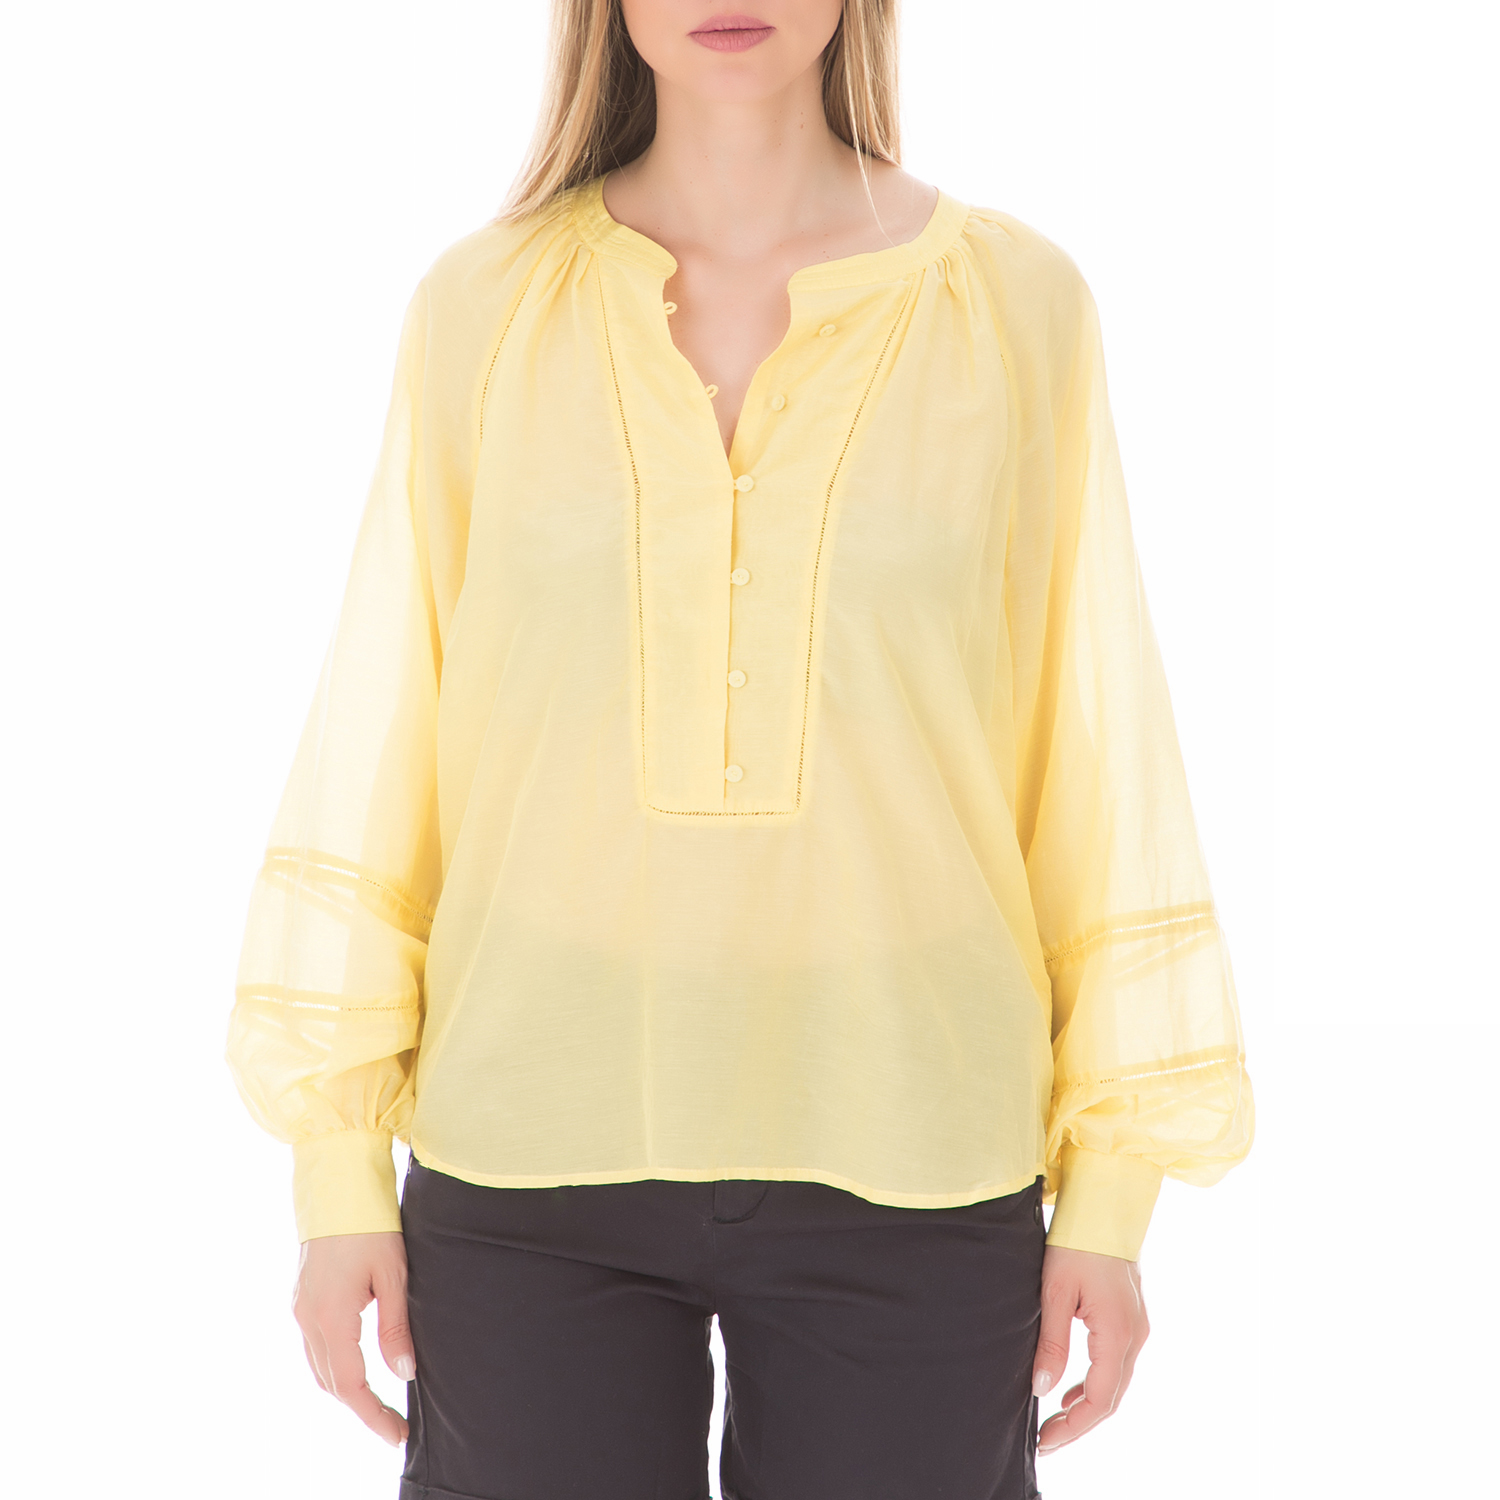 SCOTCH & SODA SCOTCH & SODA - Γυναικεία μακρυμάνικη μπλούζα SCOTCH & SODA κίτρινη